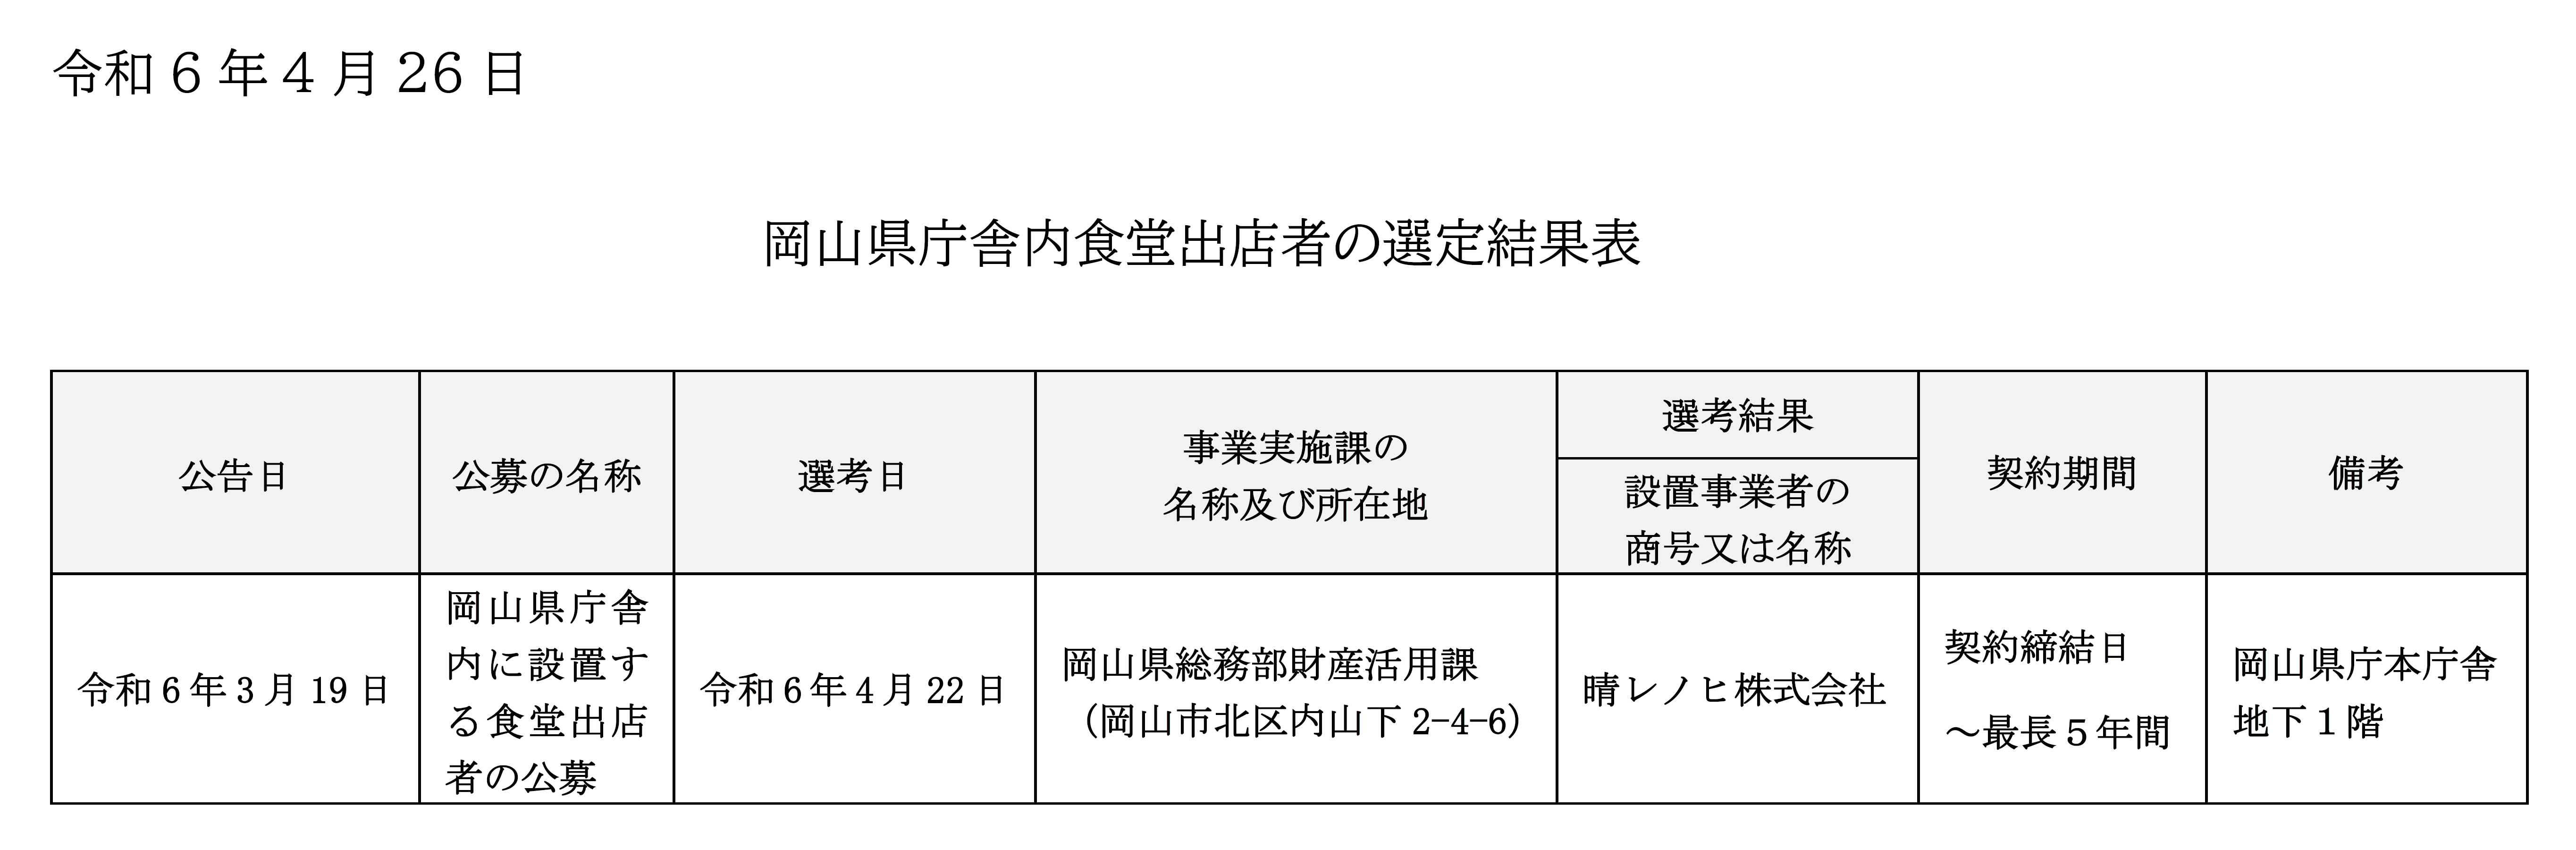 岡山県庁舎内食堂出店者の選定結果表